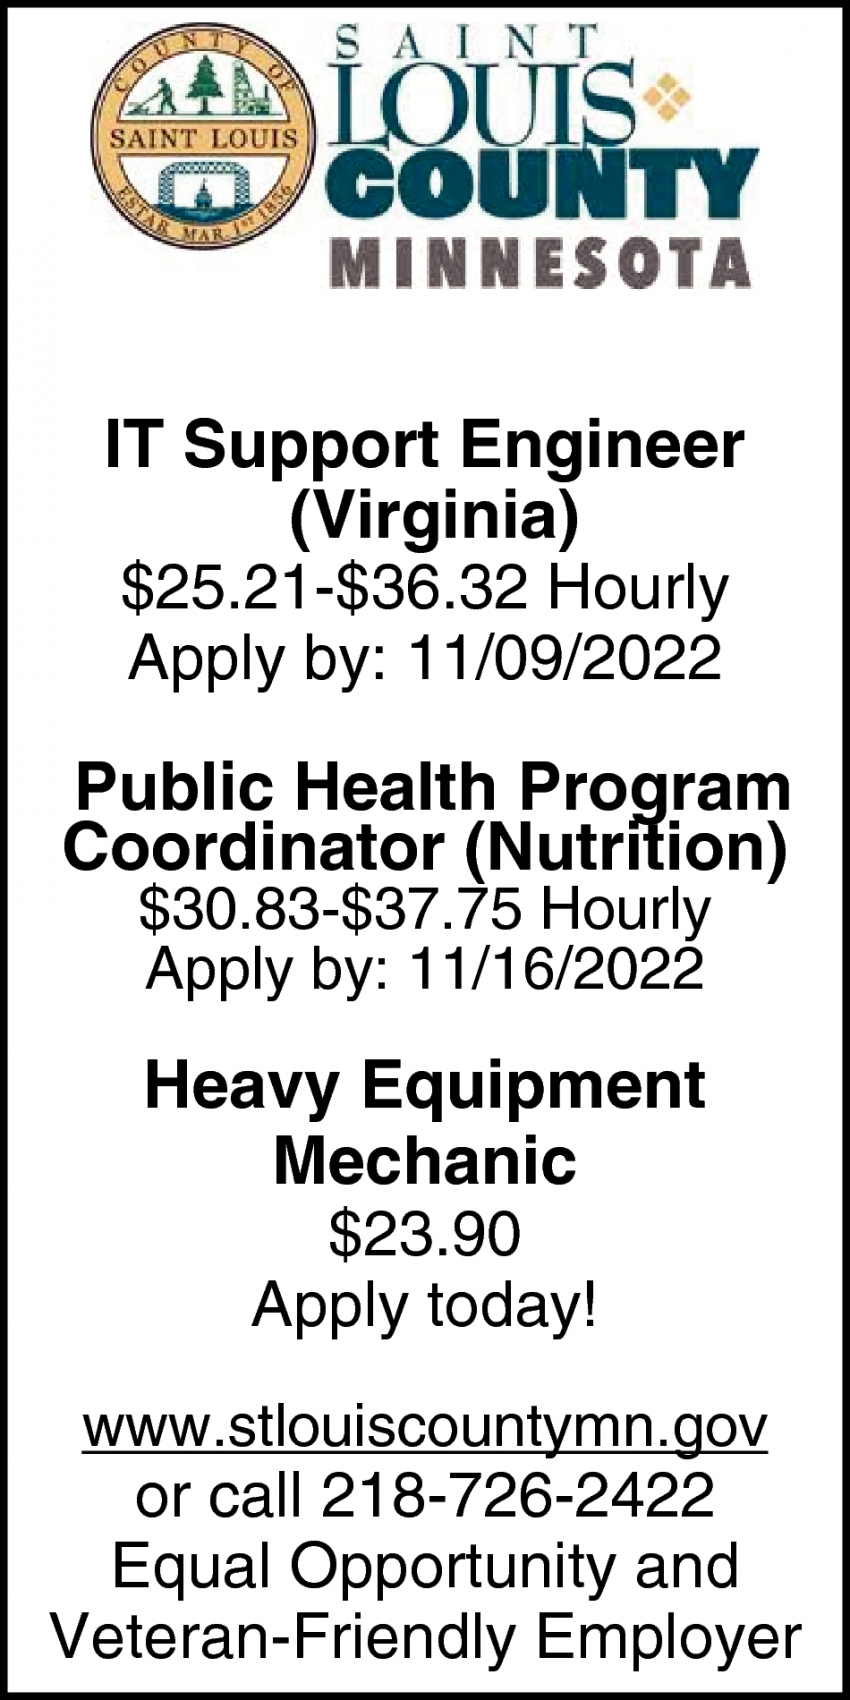 IT Support Engineer, Public Health Program Coordinator, Heavy Equipment Mechanic